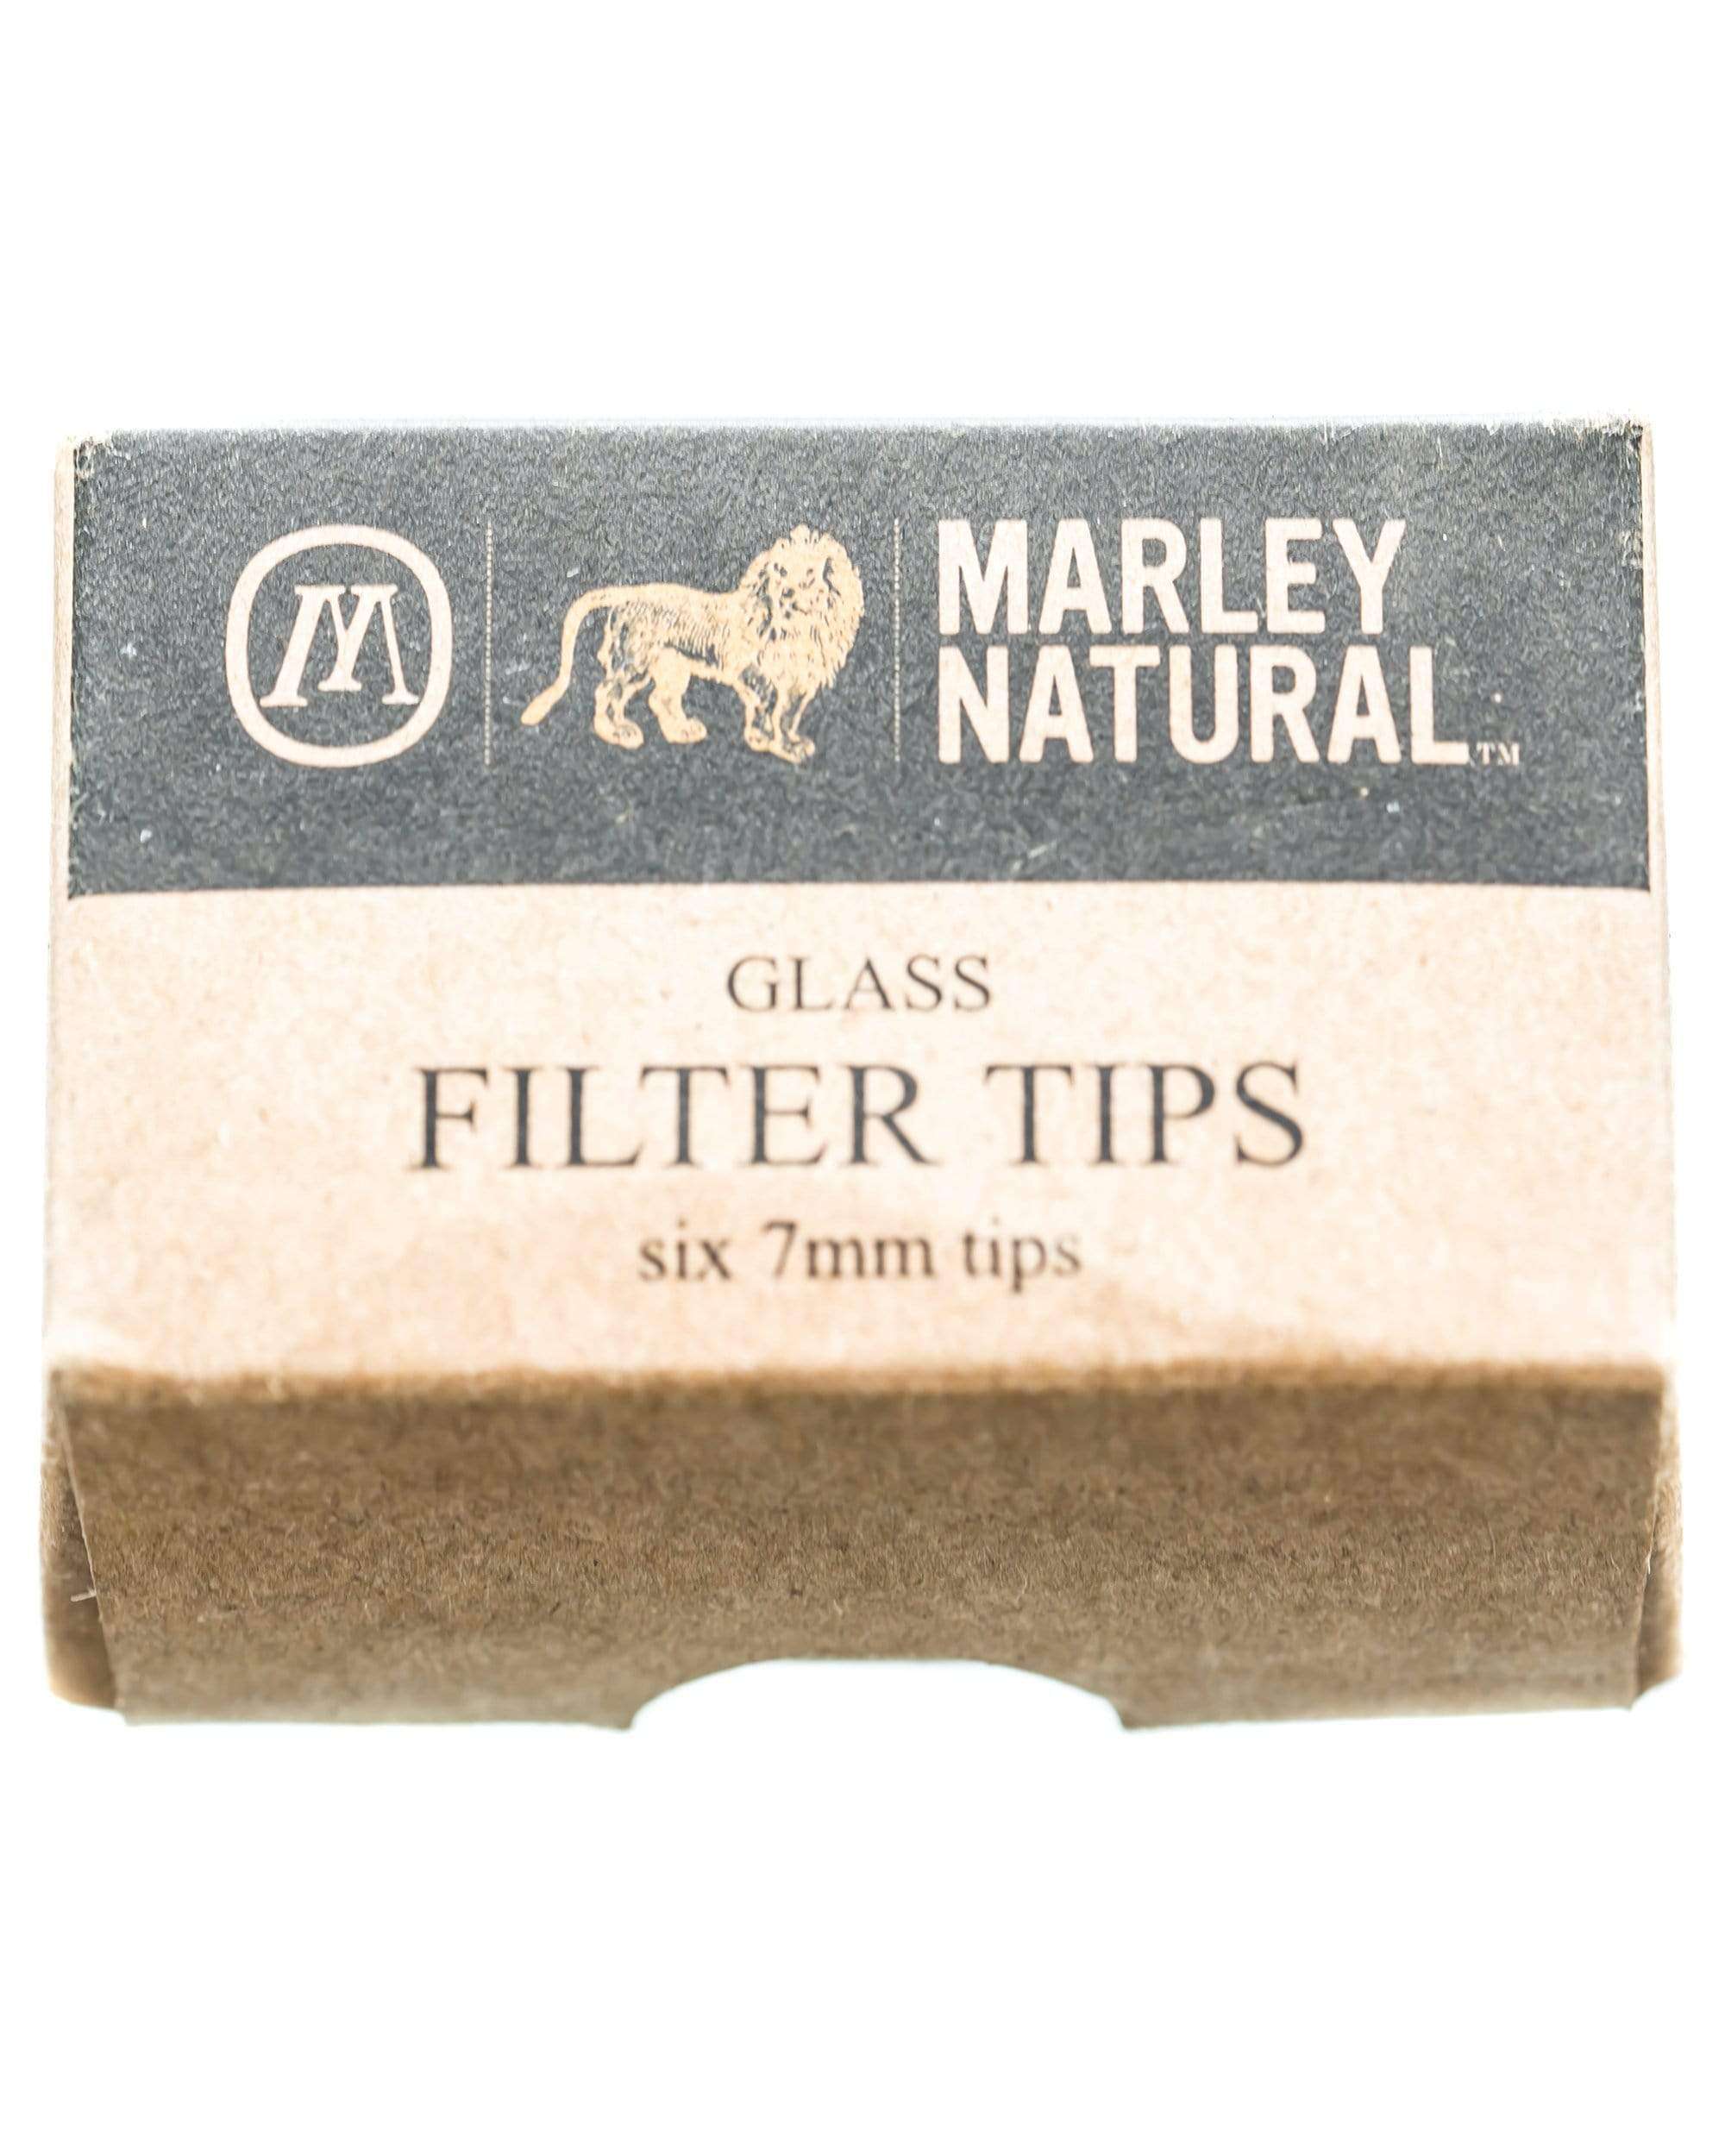 Marley Natural Filter Tips